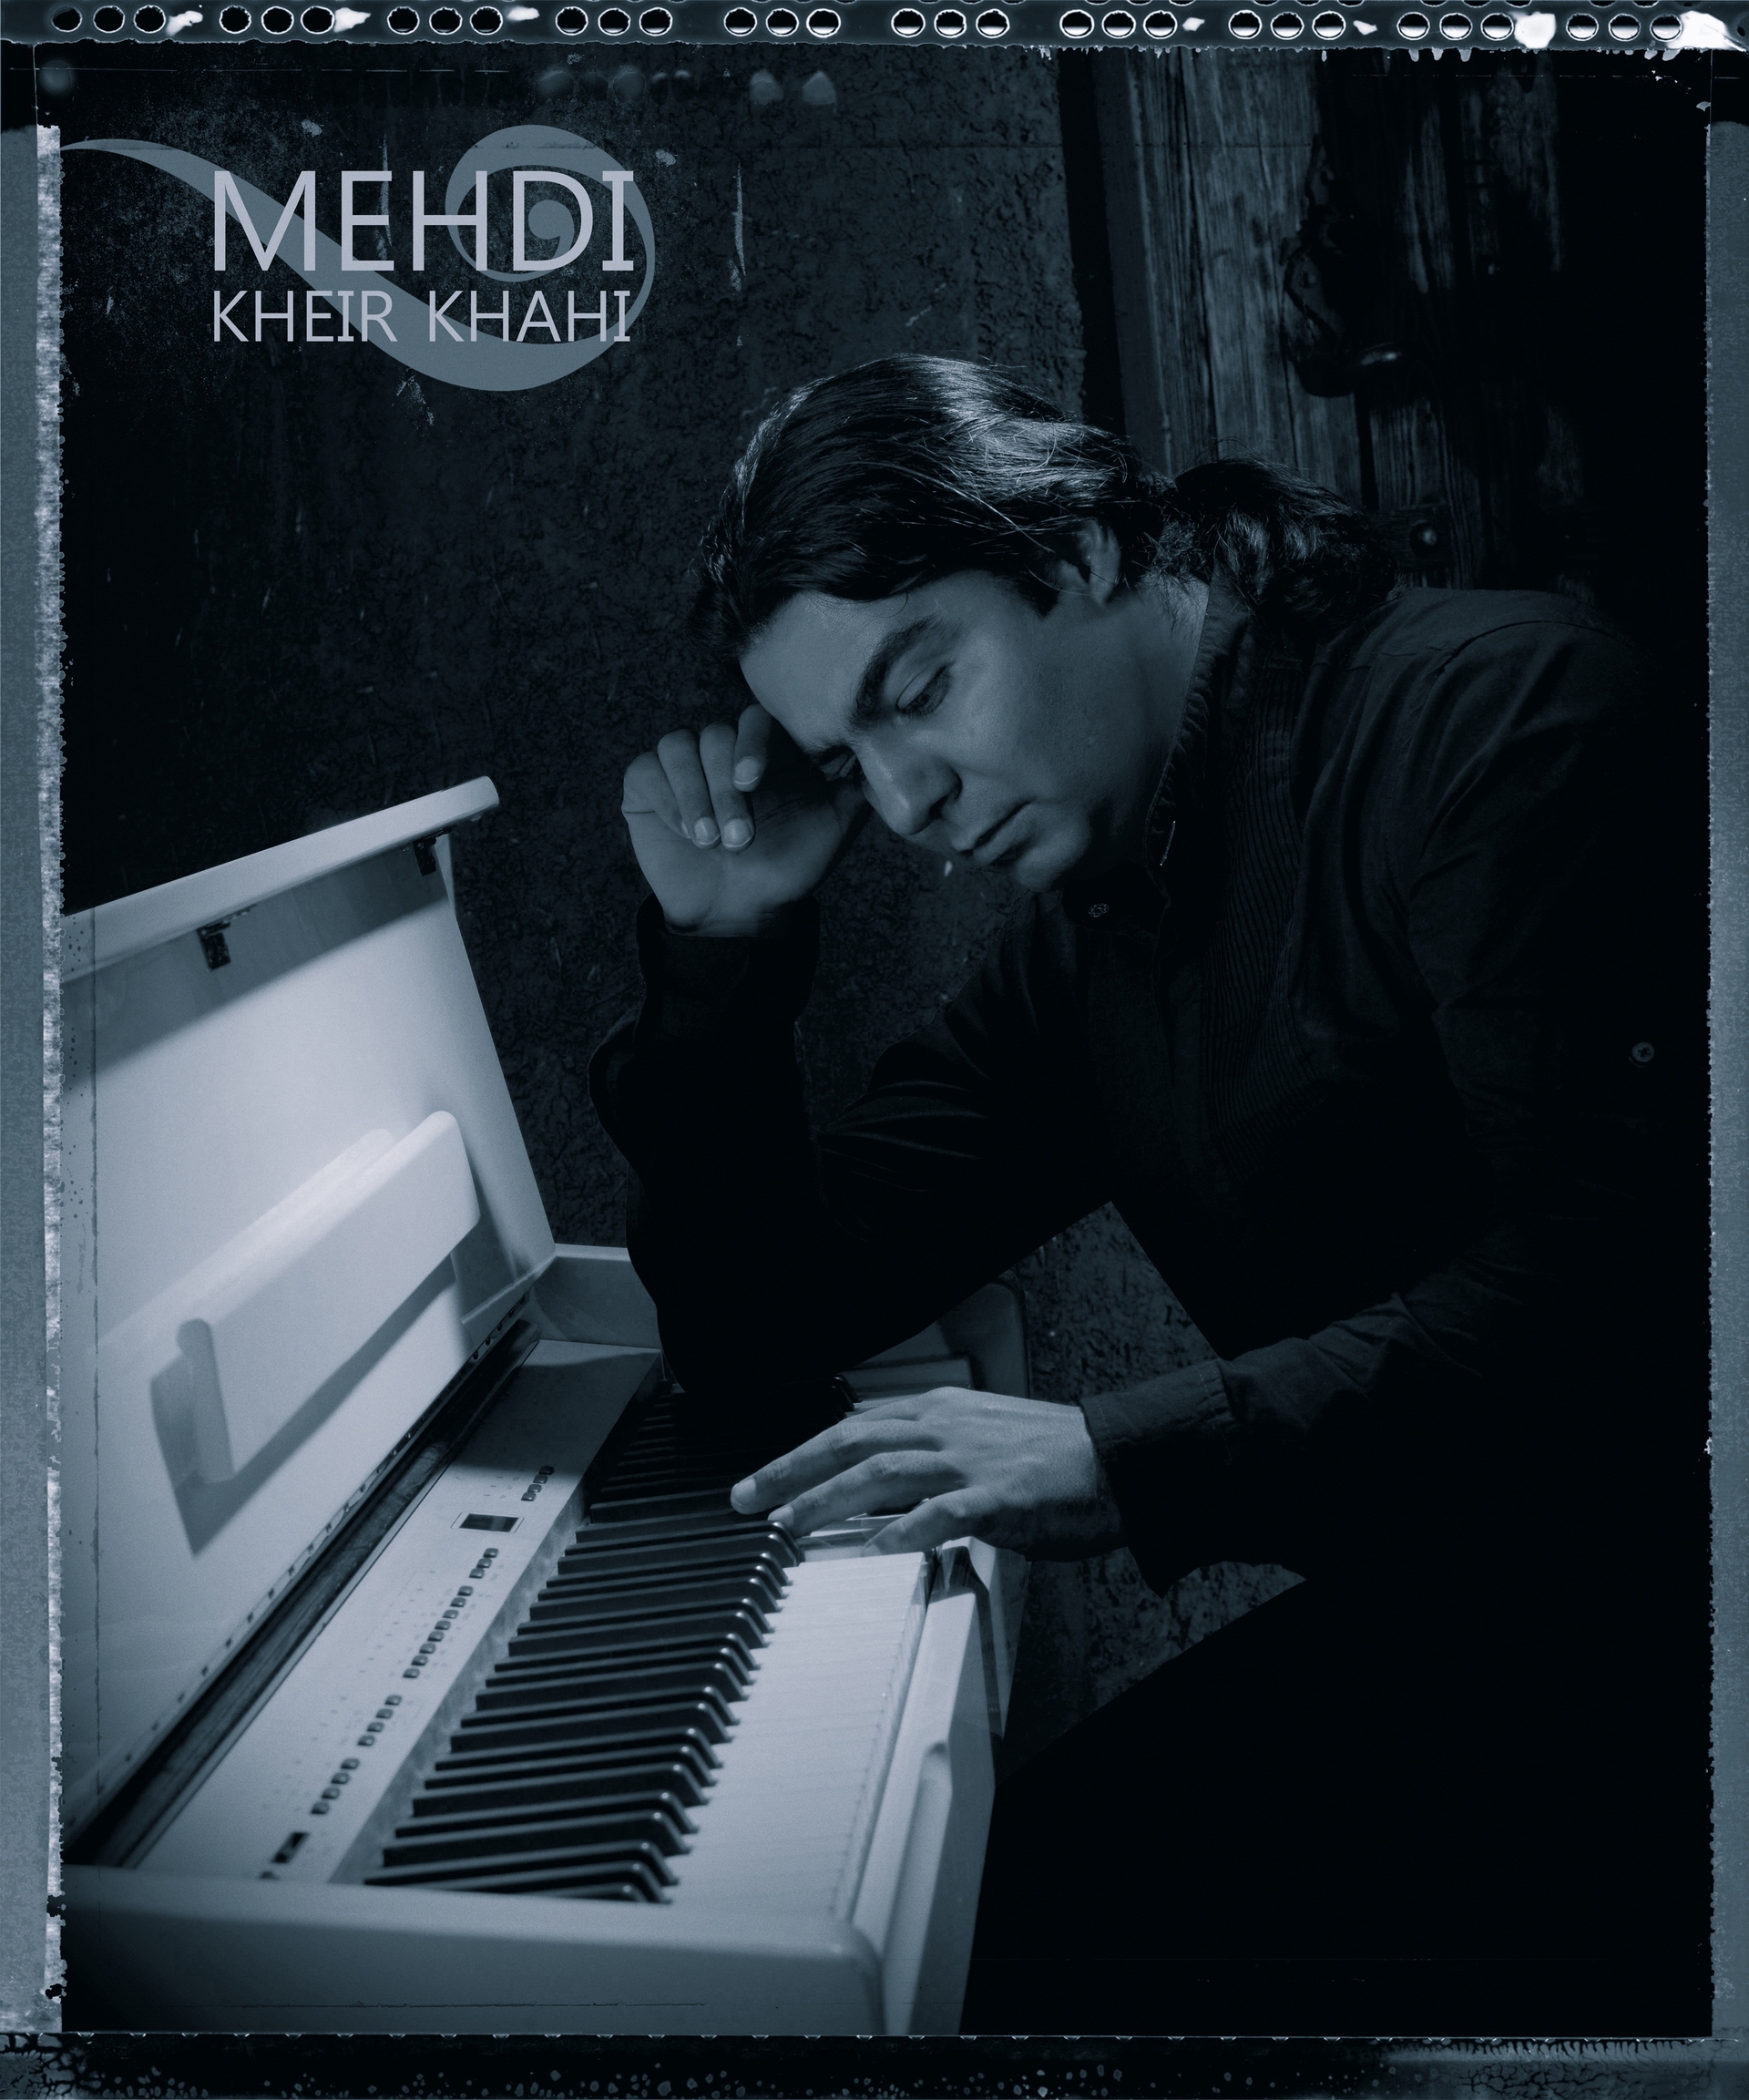 تصویری از مهدی خیرخواهی، آهنگ ساز و بازیگر سینما و تلویزیون در حال بازیگری سر صحنه یکی از آثارش